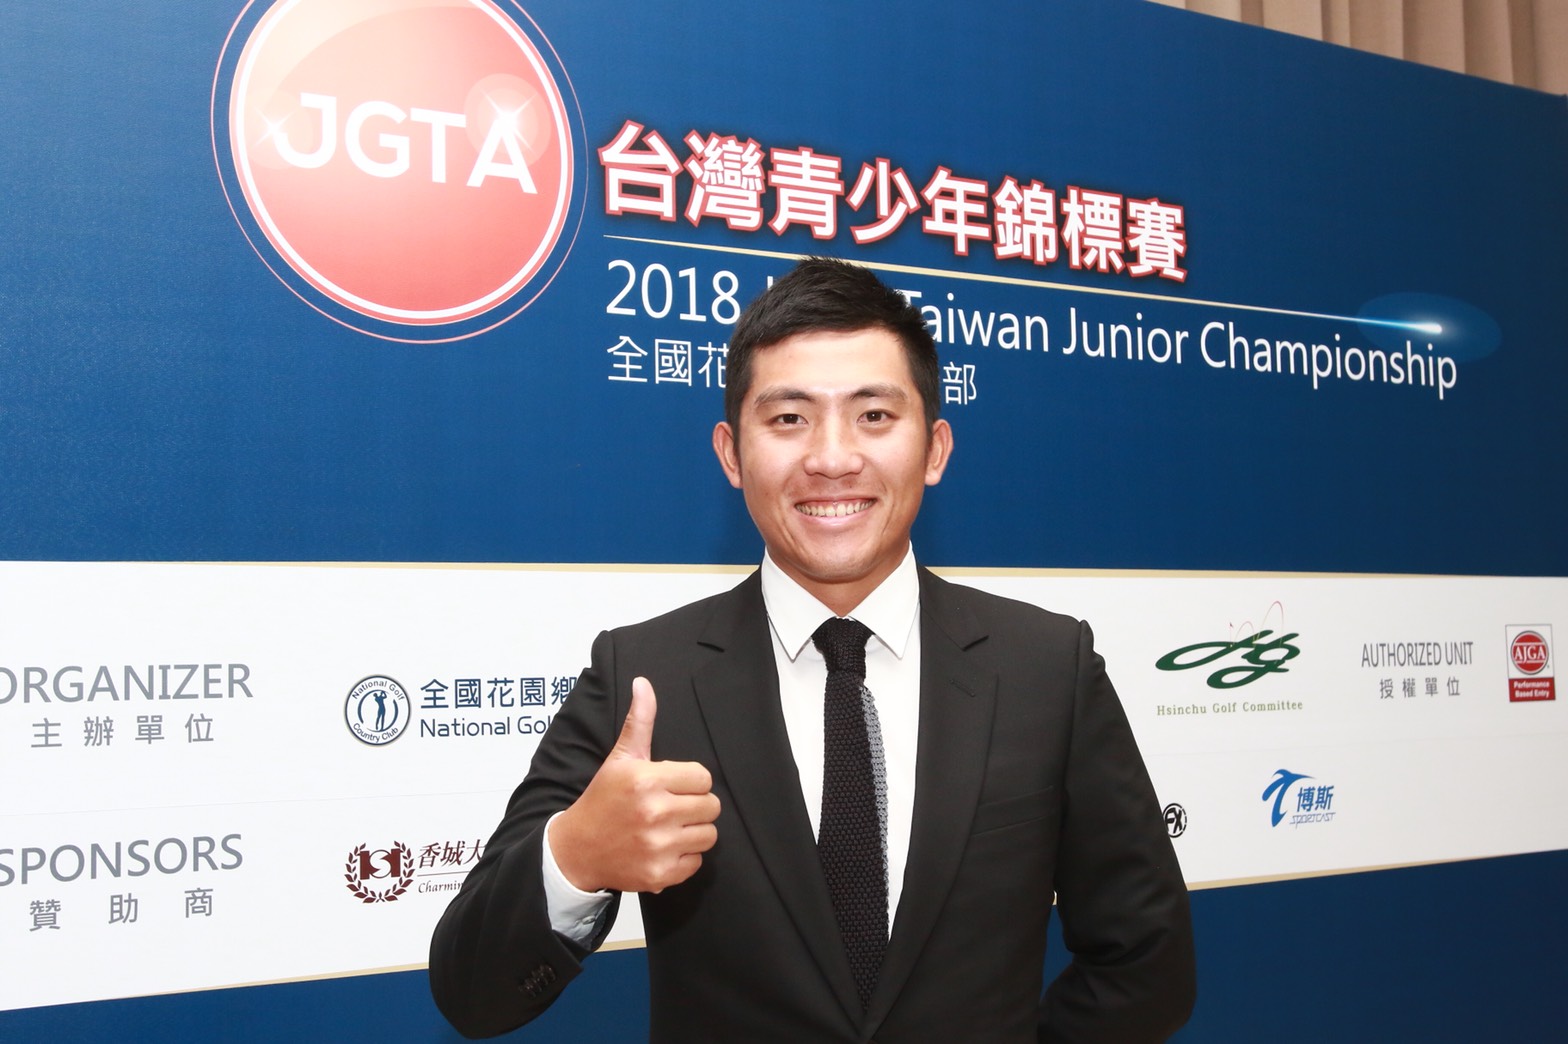 潘政琮表示，JGTA台灣青少年錦標賽是發掘高爾夫未來之星的一場很棒的比賽，「如果在我的青少年時代也有像這樣的比賽機會該有多好，」他說：「本賽事將鼓舞所有年輕的球員們去參賽，我期待看到來自亞洲的更多的高爾夫後起之秀。」